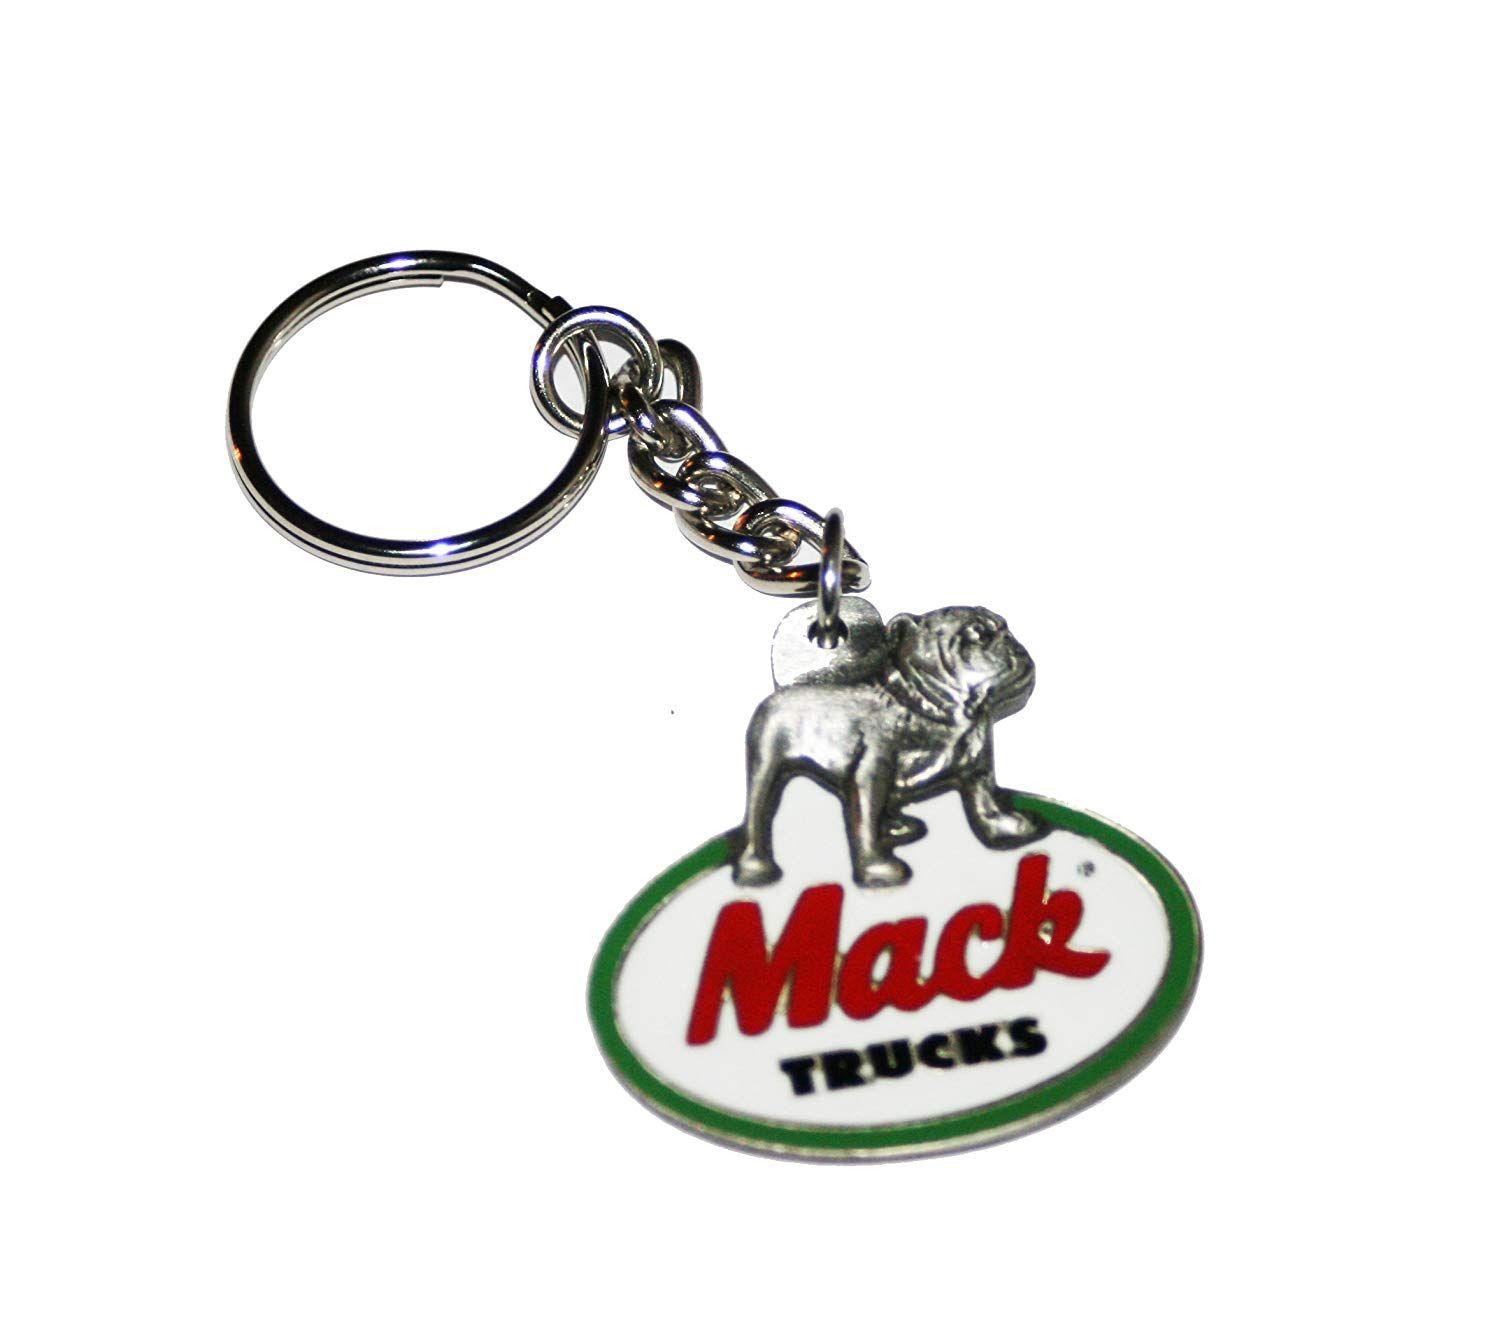 Mack Dog Logo - Amazon.com: Mack Trucks Enameled Retro Logo Keychain: Automotive